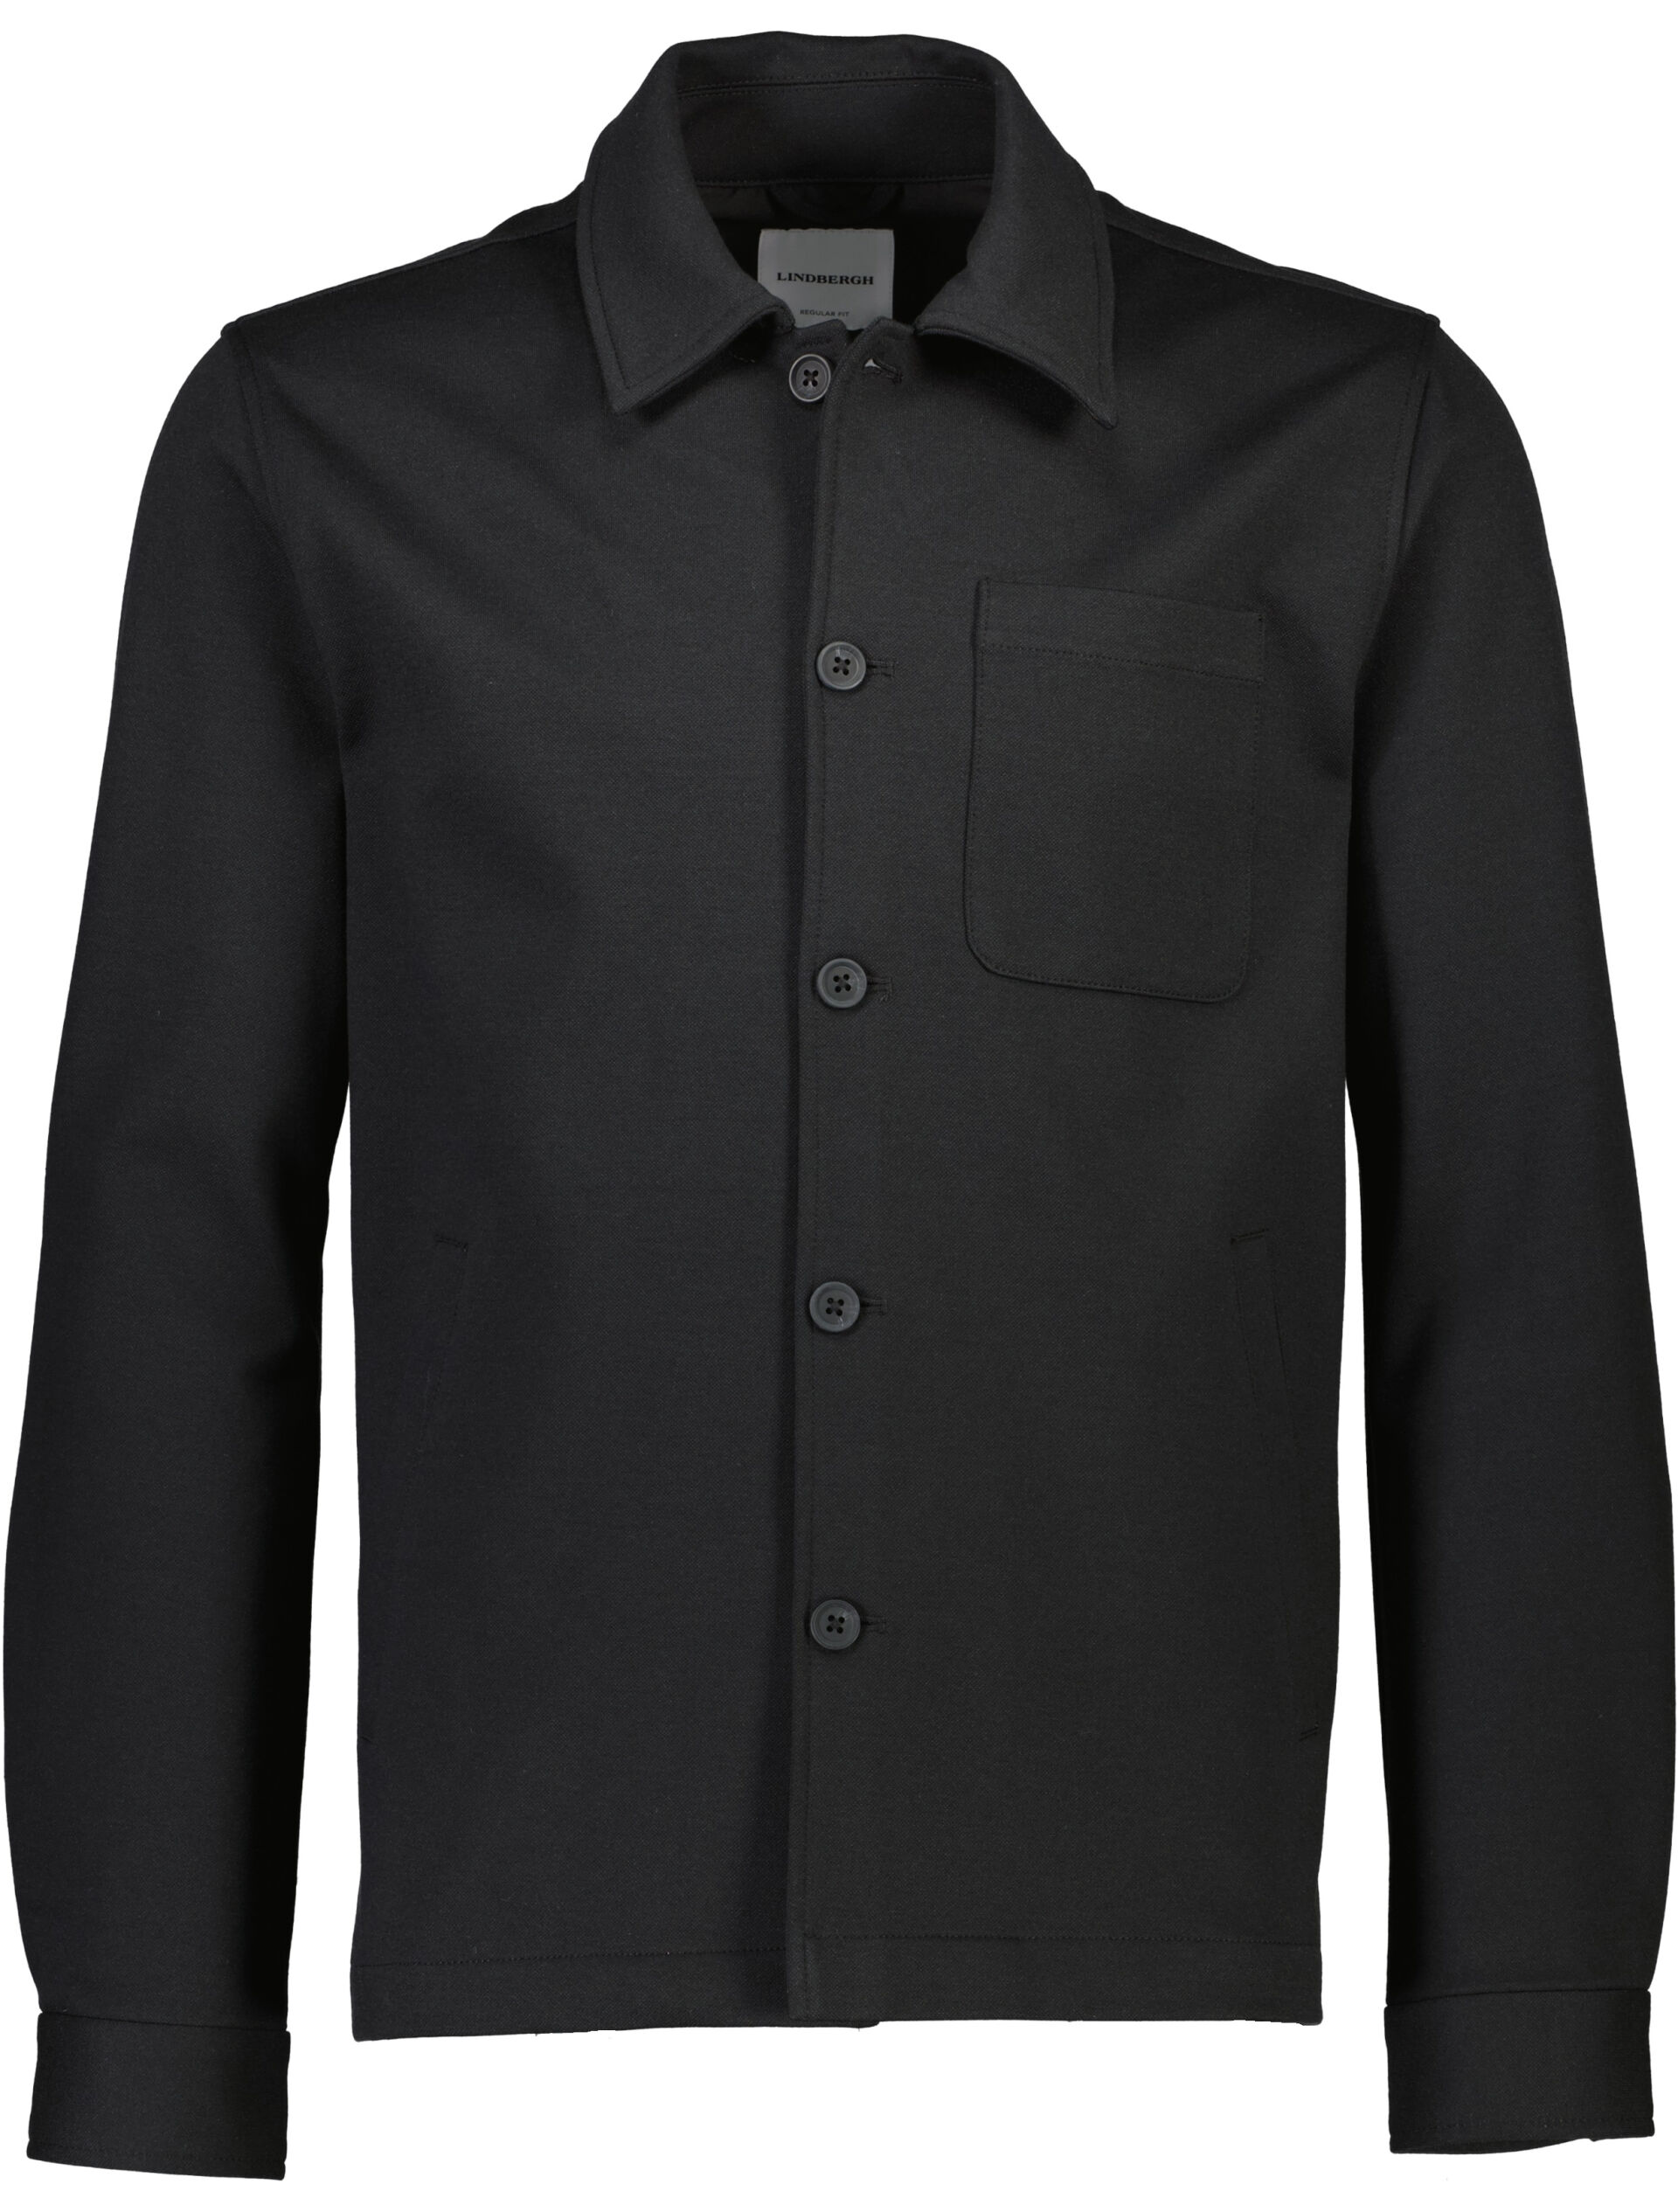 Overshirt Overshirt Black 30-306036